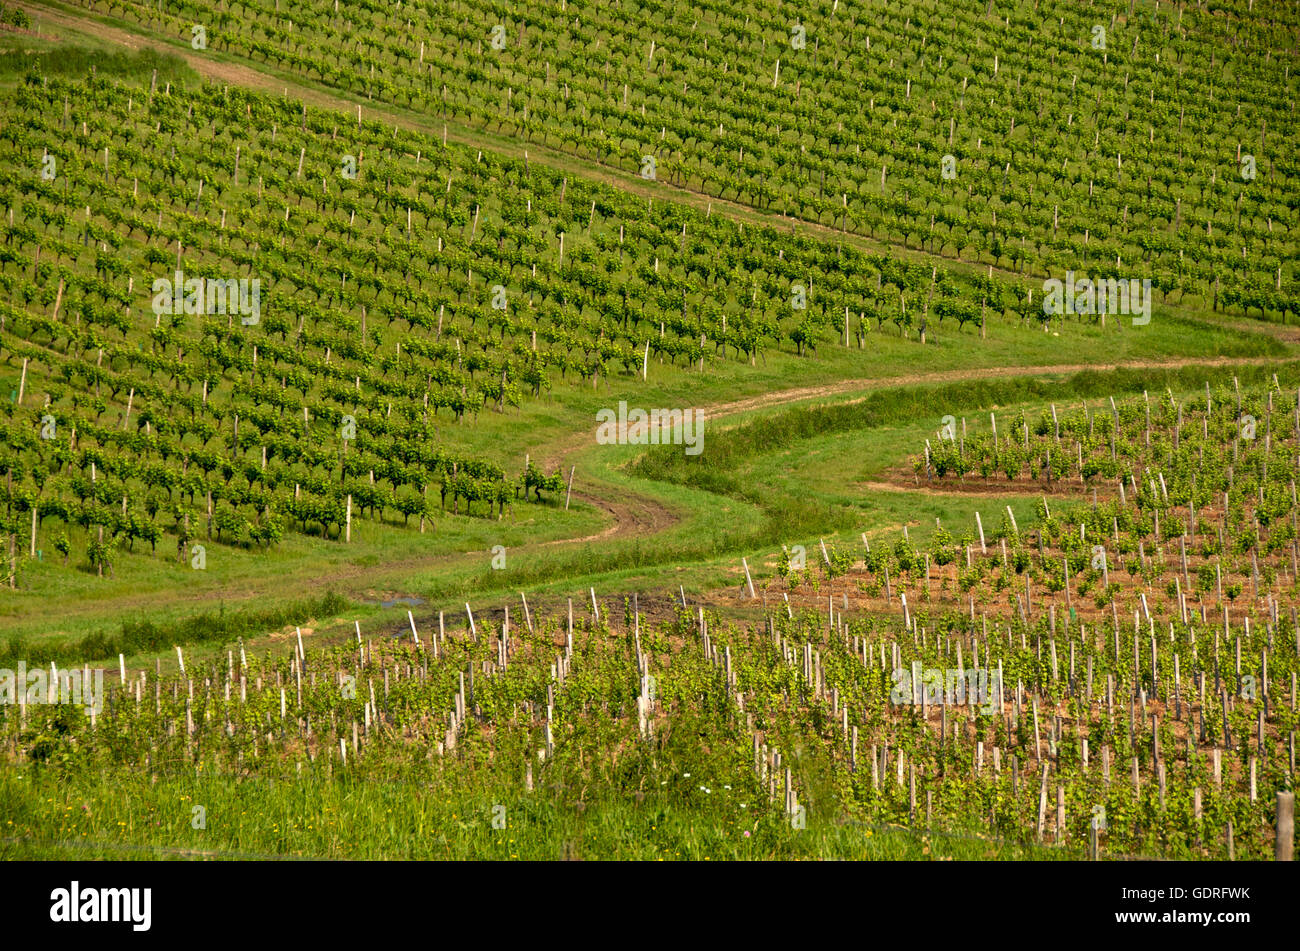 Vignoble de Monbazillac, Département de la Dordogne, région Aquitaine, France, Europe Banque D'Images